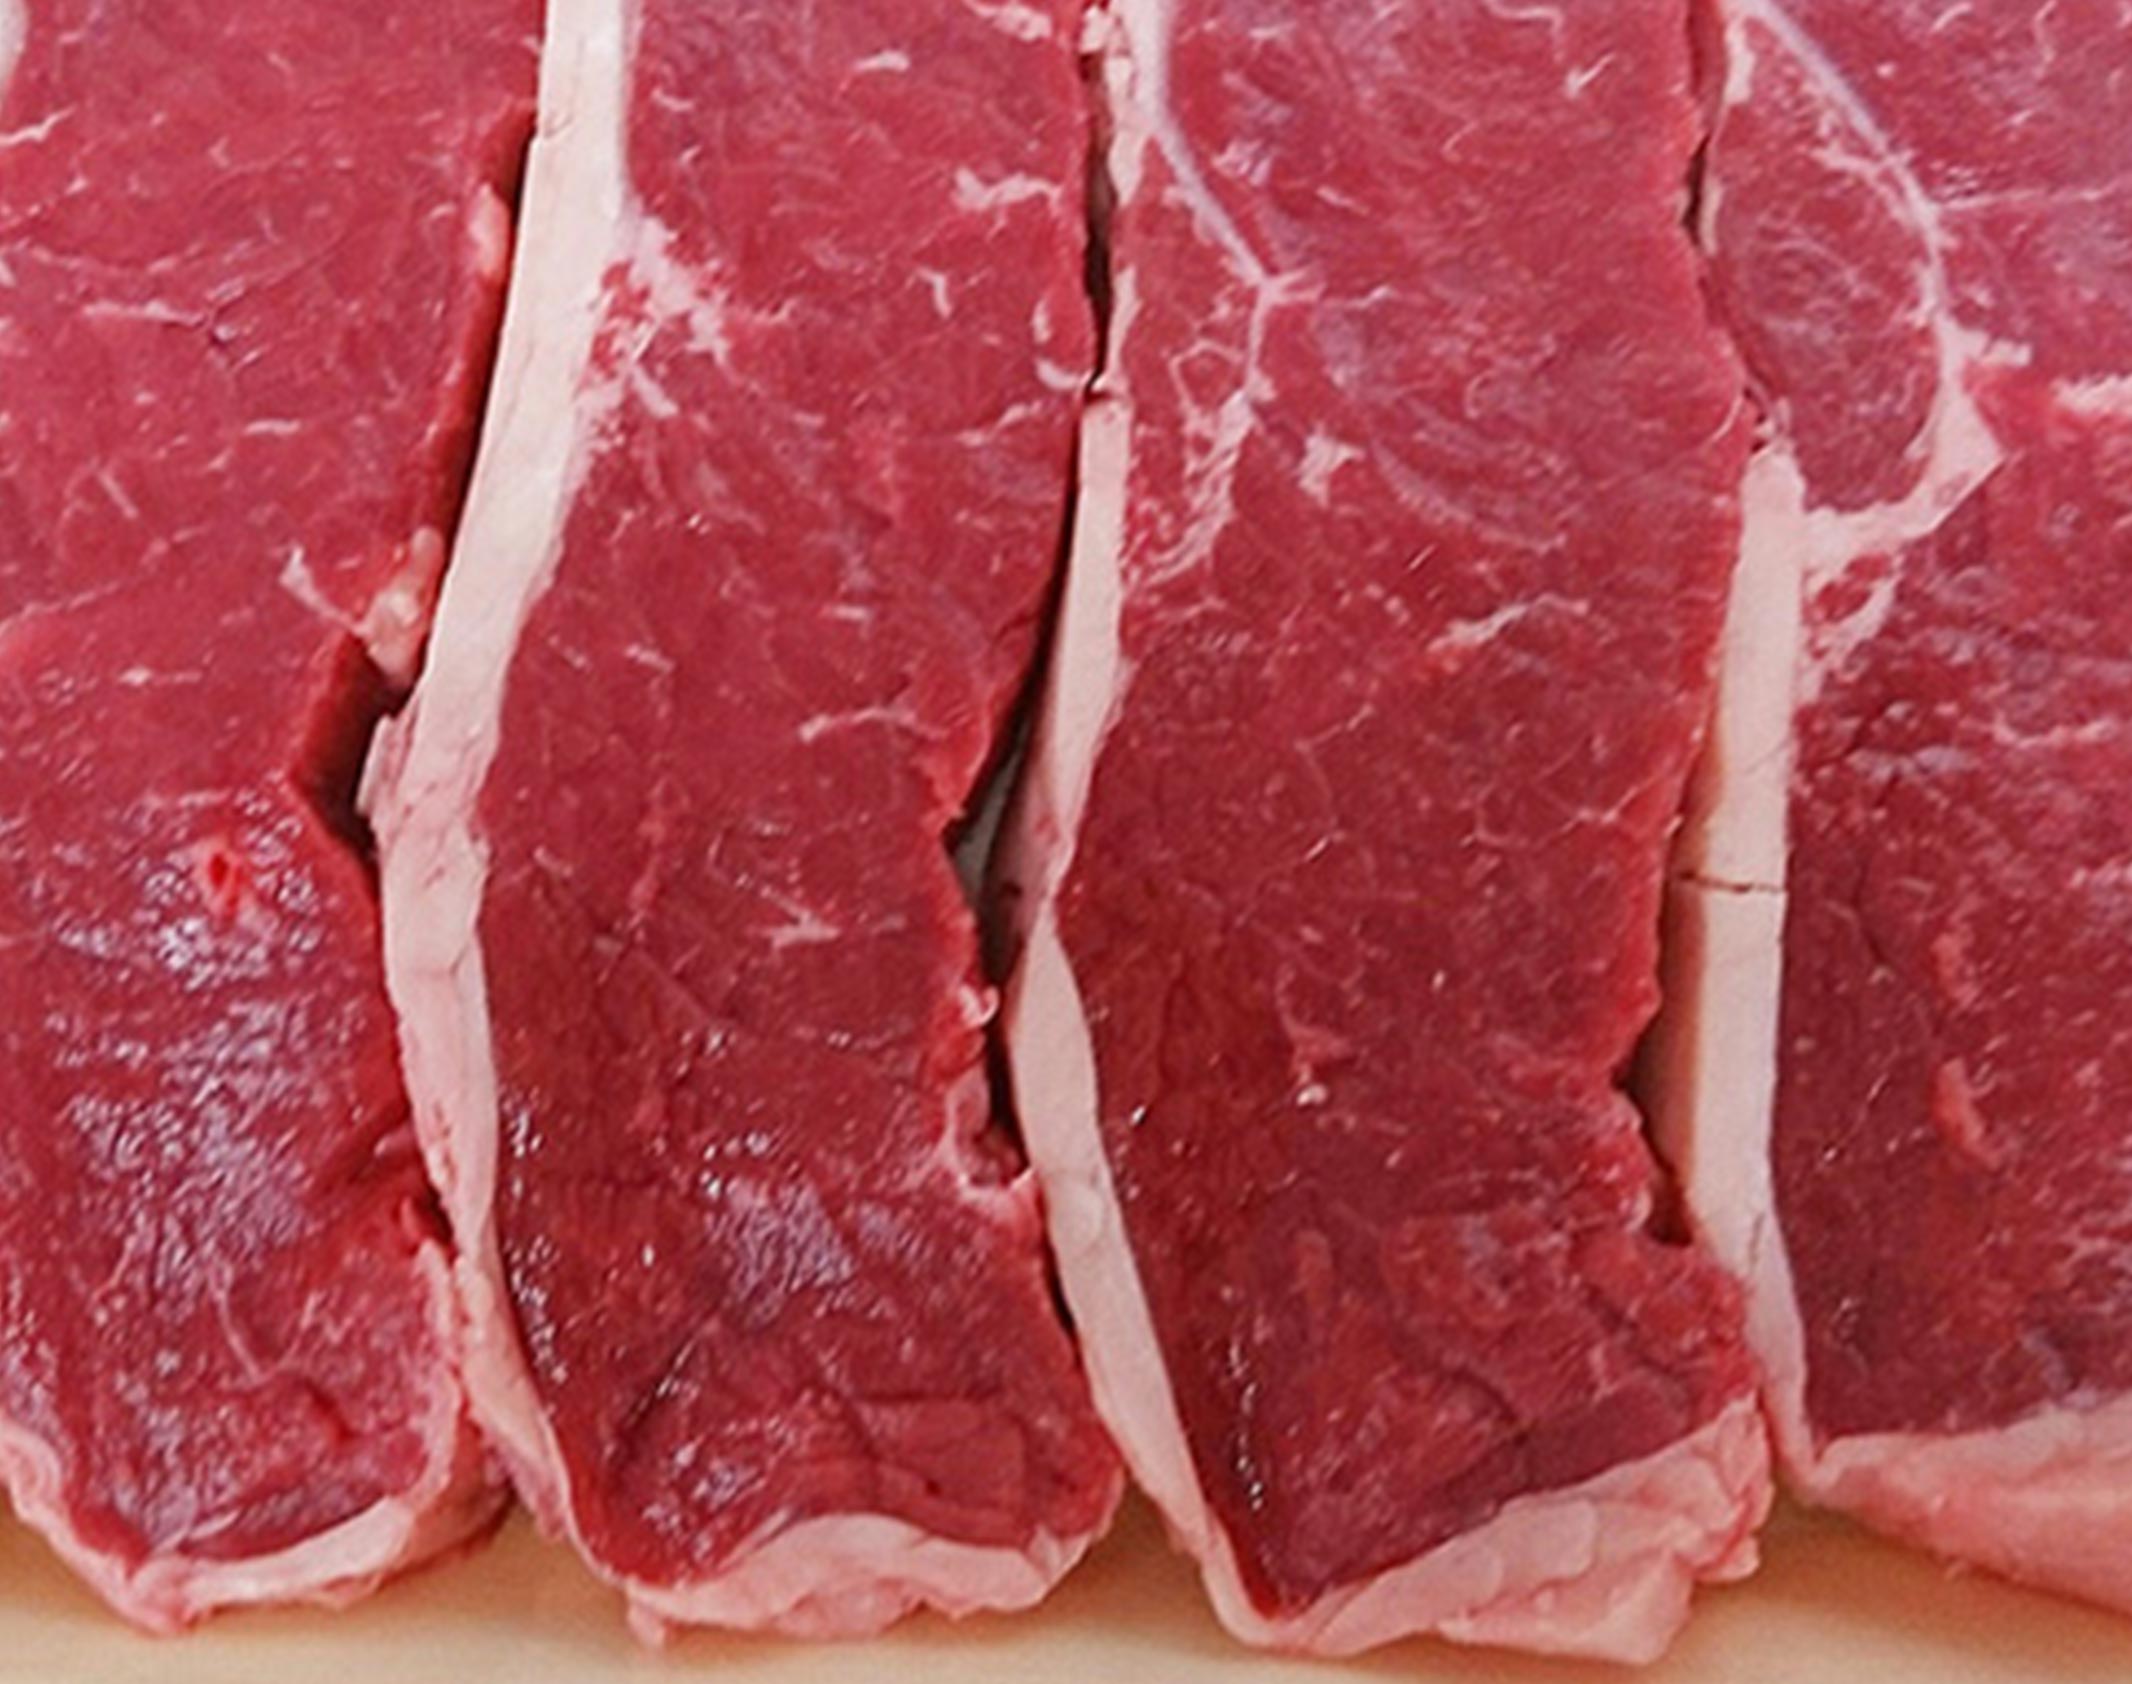 イチボ肉(ランプ肉) ピッカーニャ スライス 約1kg